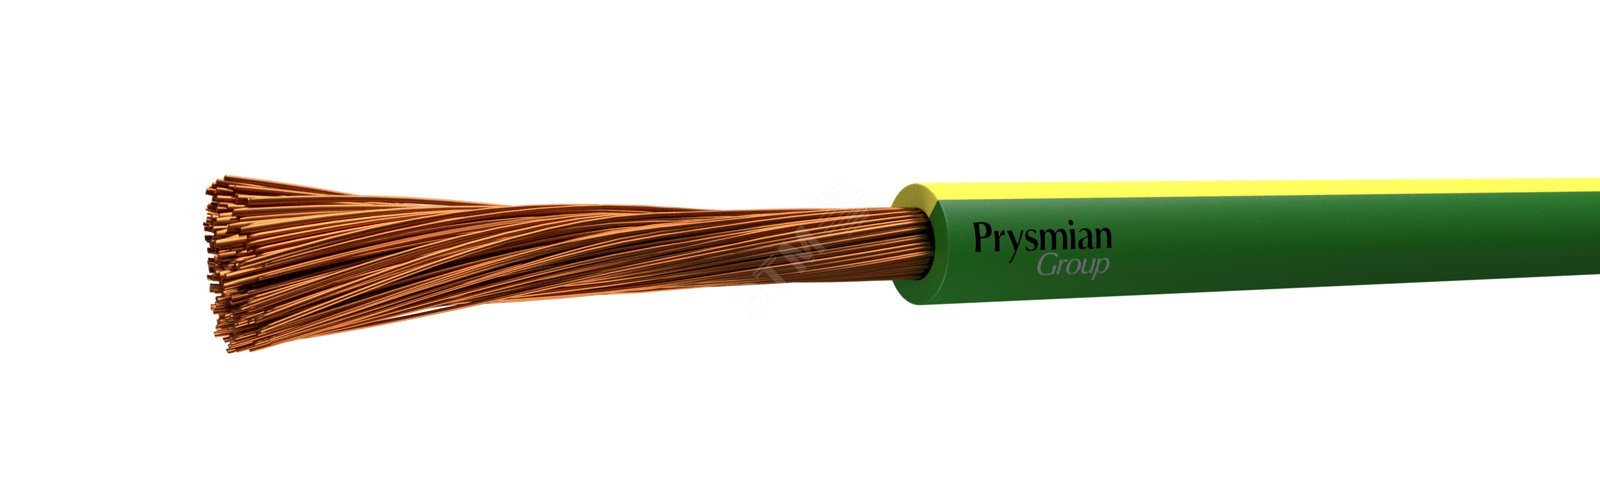 Провод ПУГВ 1х10 желто-зеленый многопроволочный РЭК/Prysmian